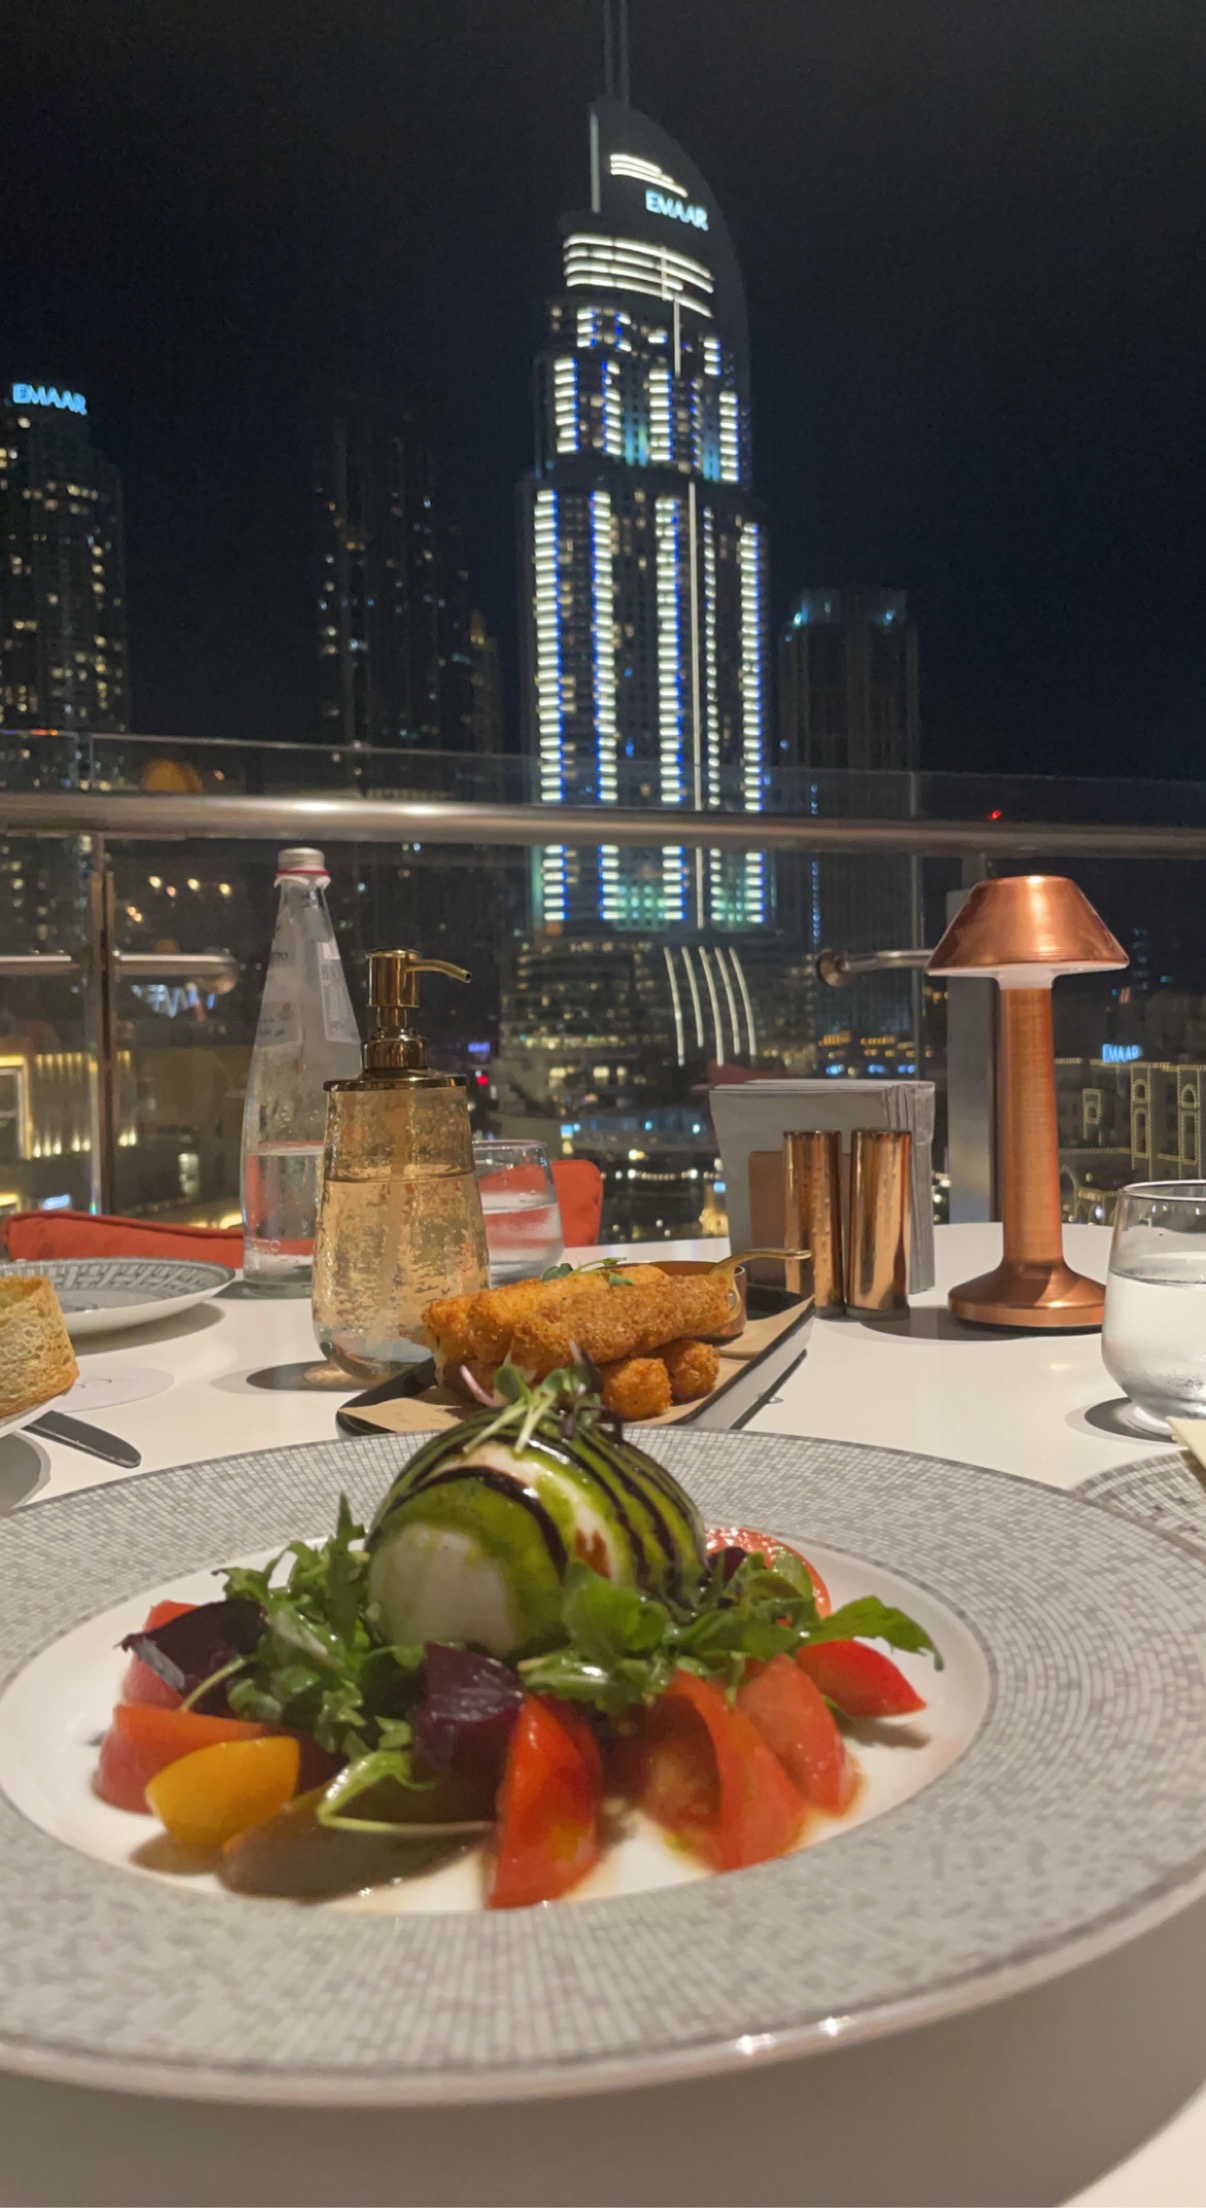 Salade burrata dans un restaurant donnant la vue sur les fontaines situées aux pieds de la Burj Khalifa à Dubai